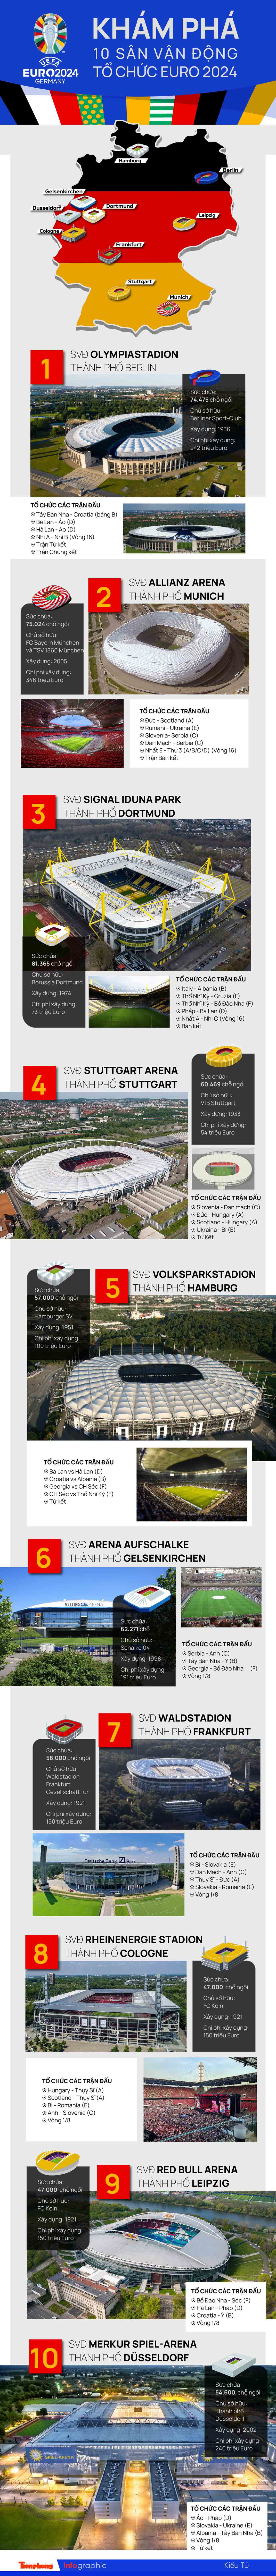 Khám phá 10 sân vận động tổ chức EURO 2024 - 1